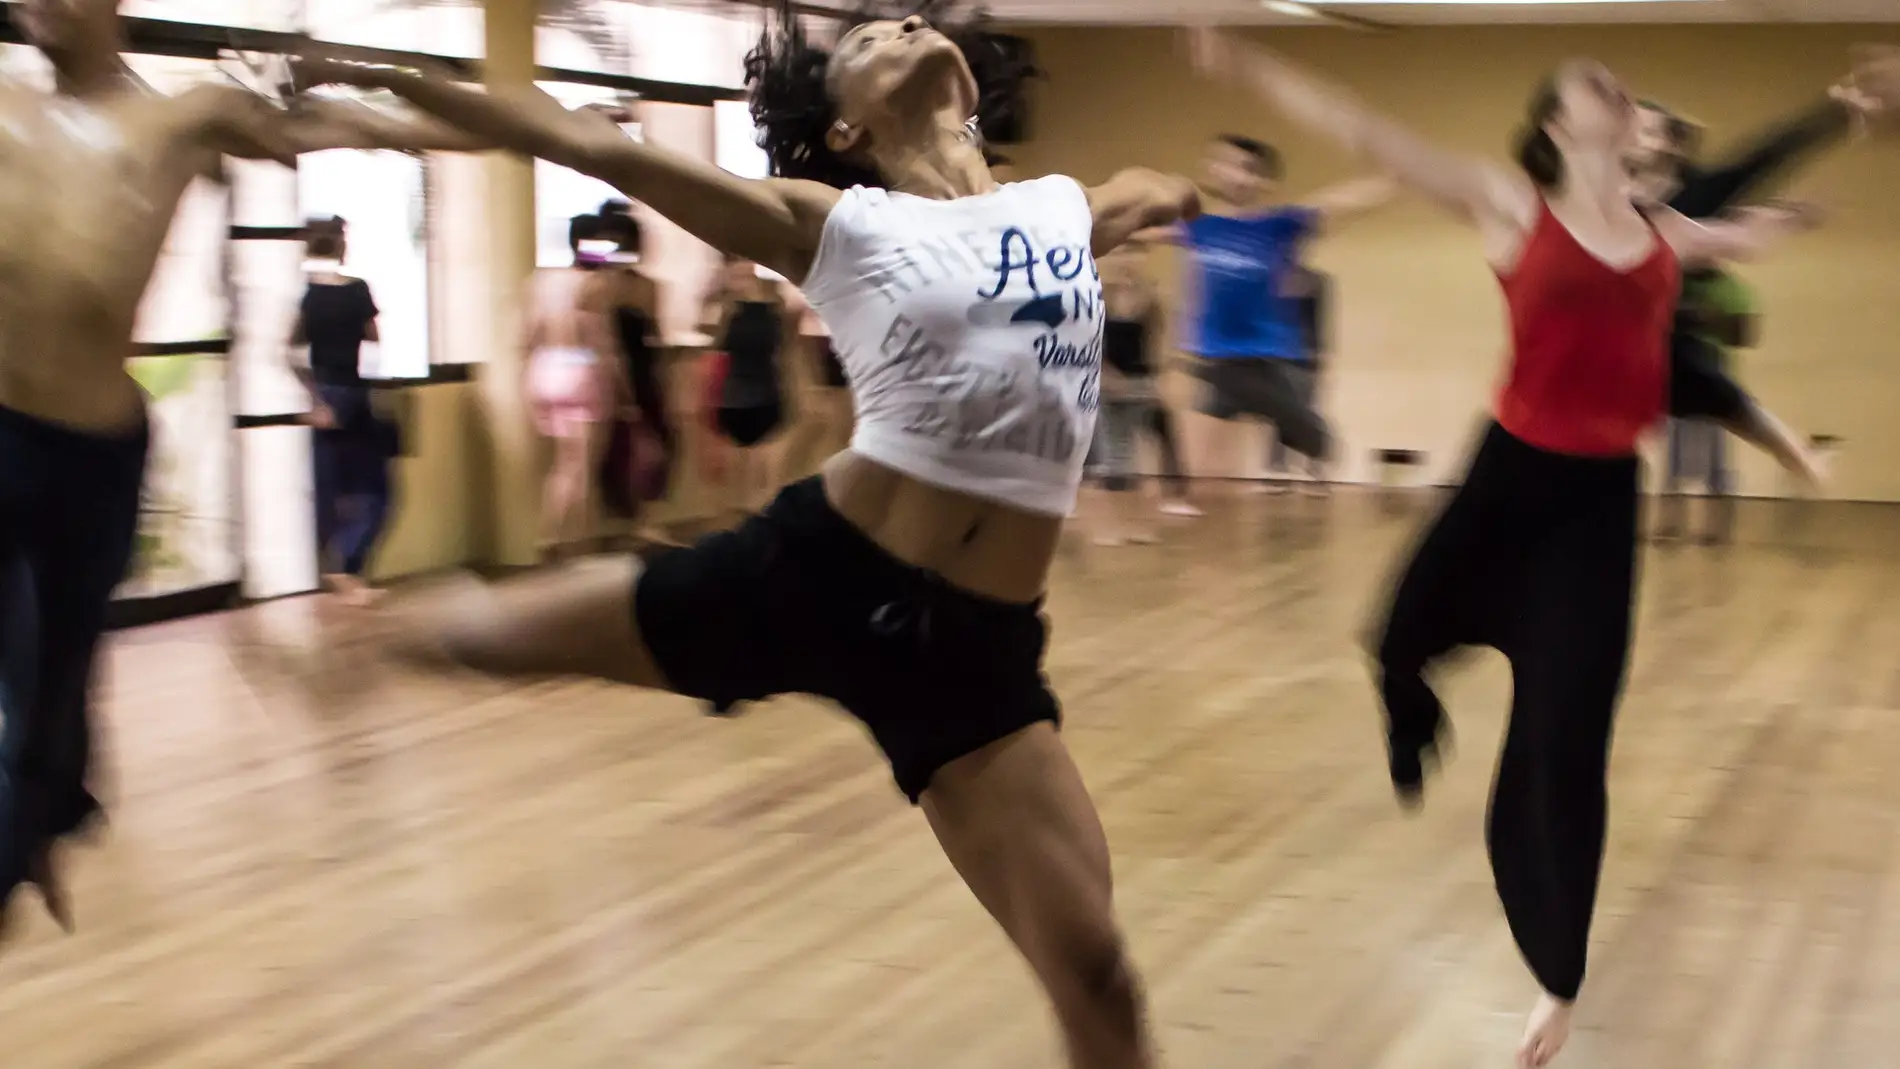 Bailar mejora la salud física y mental: estos son los beneficios demostrados